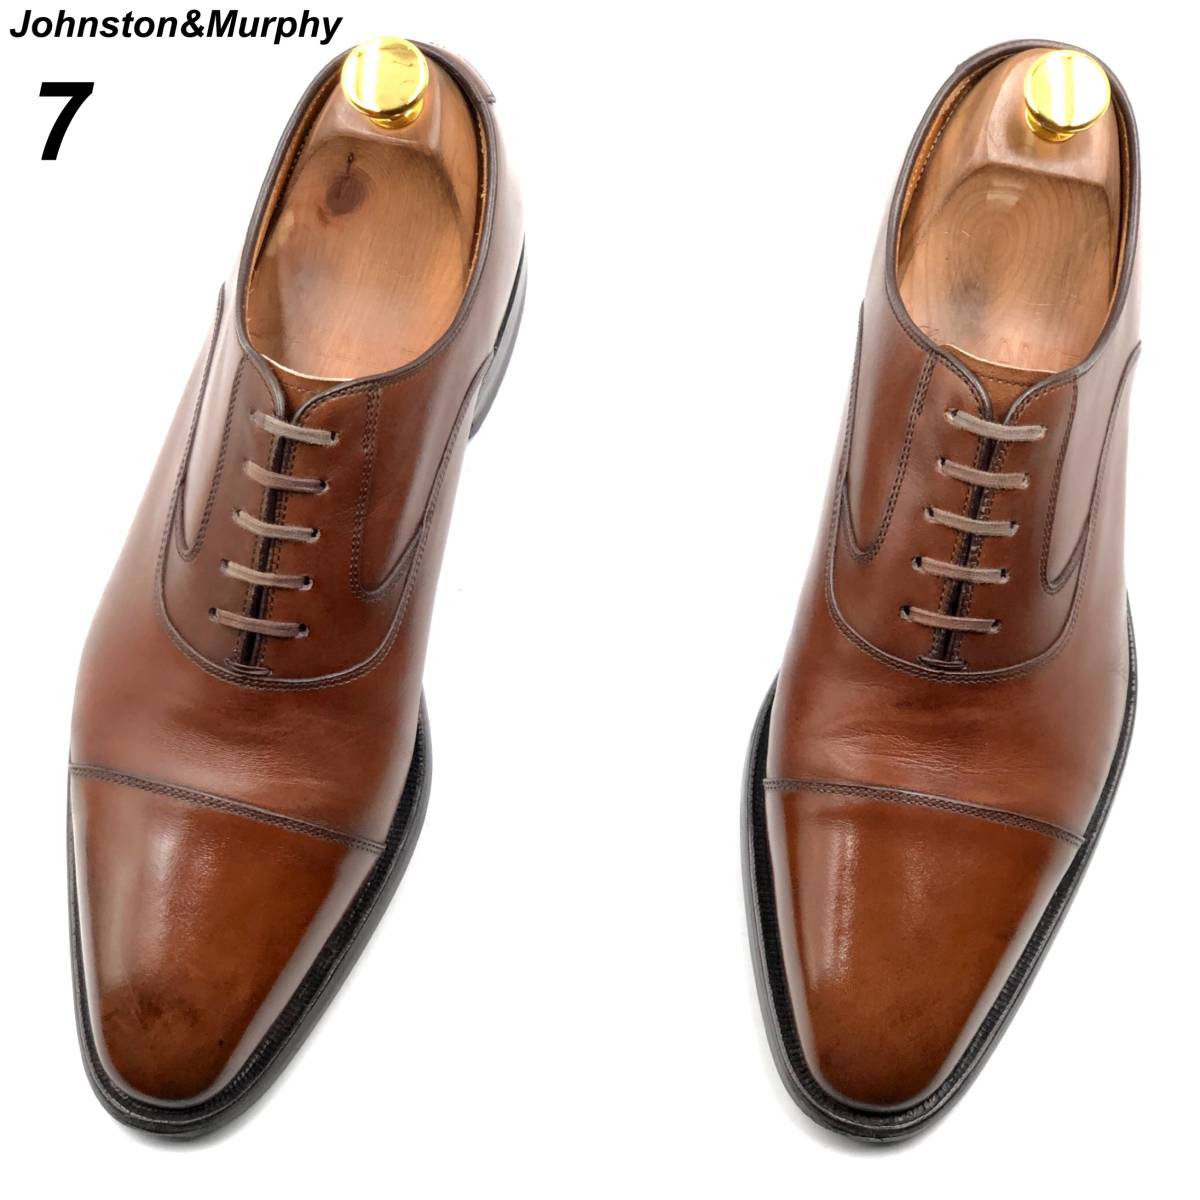 即決 Johnston&Murphy ジョンストン&マーフィー 25cm 7 メンズ レザーシューズ ストレートチップ 茶 ブラウン 革靴 皮靴 ビジネスシューズ